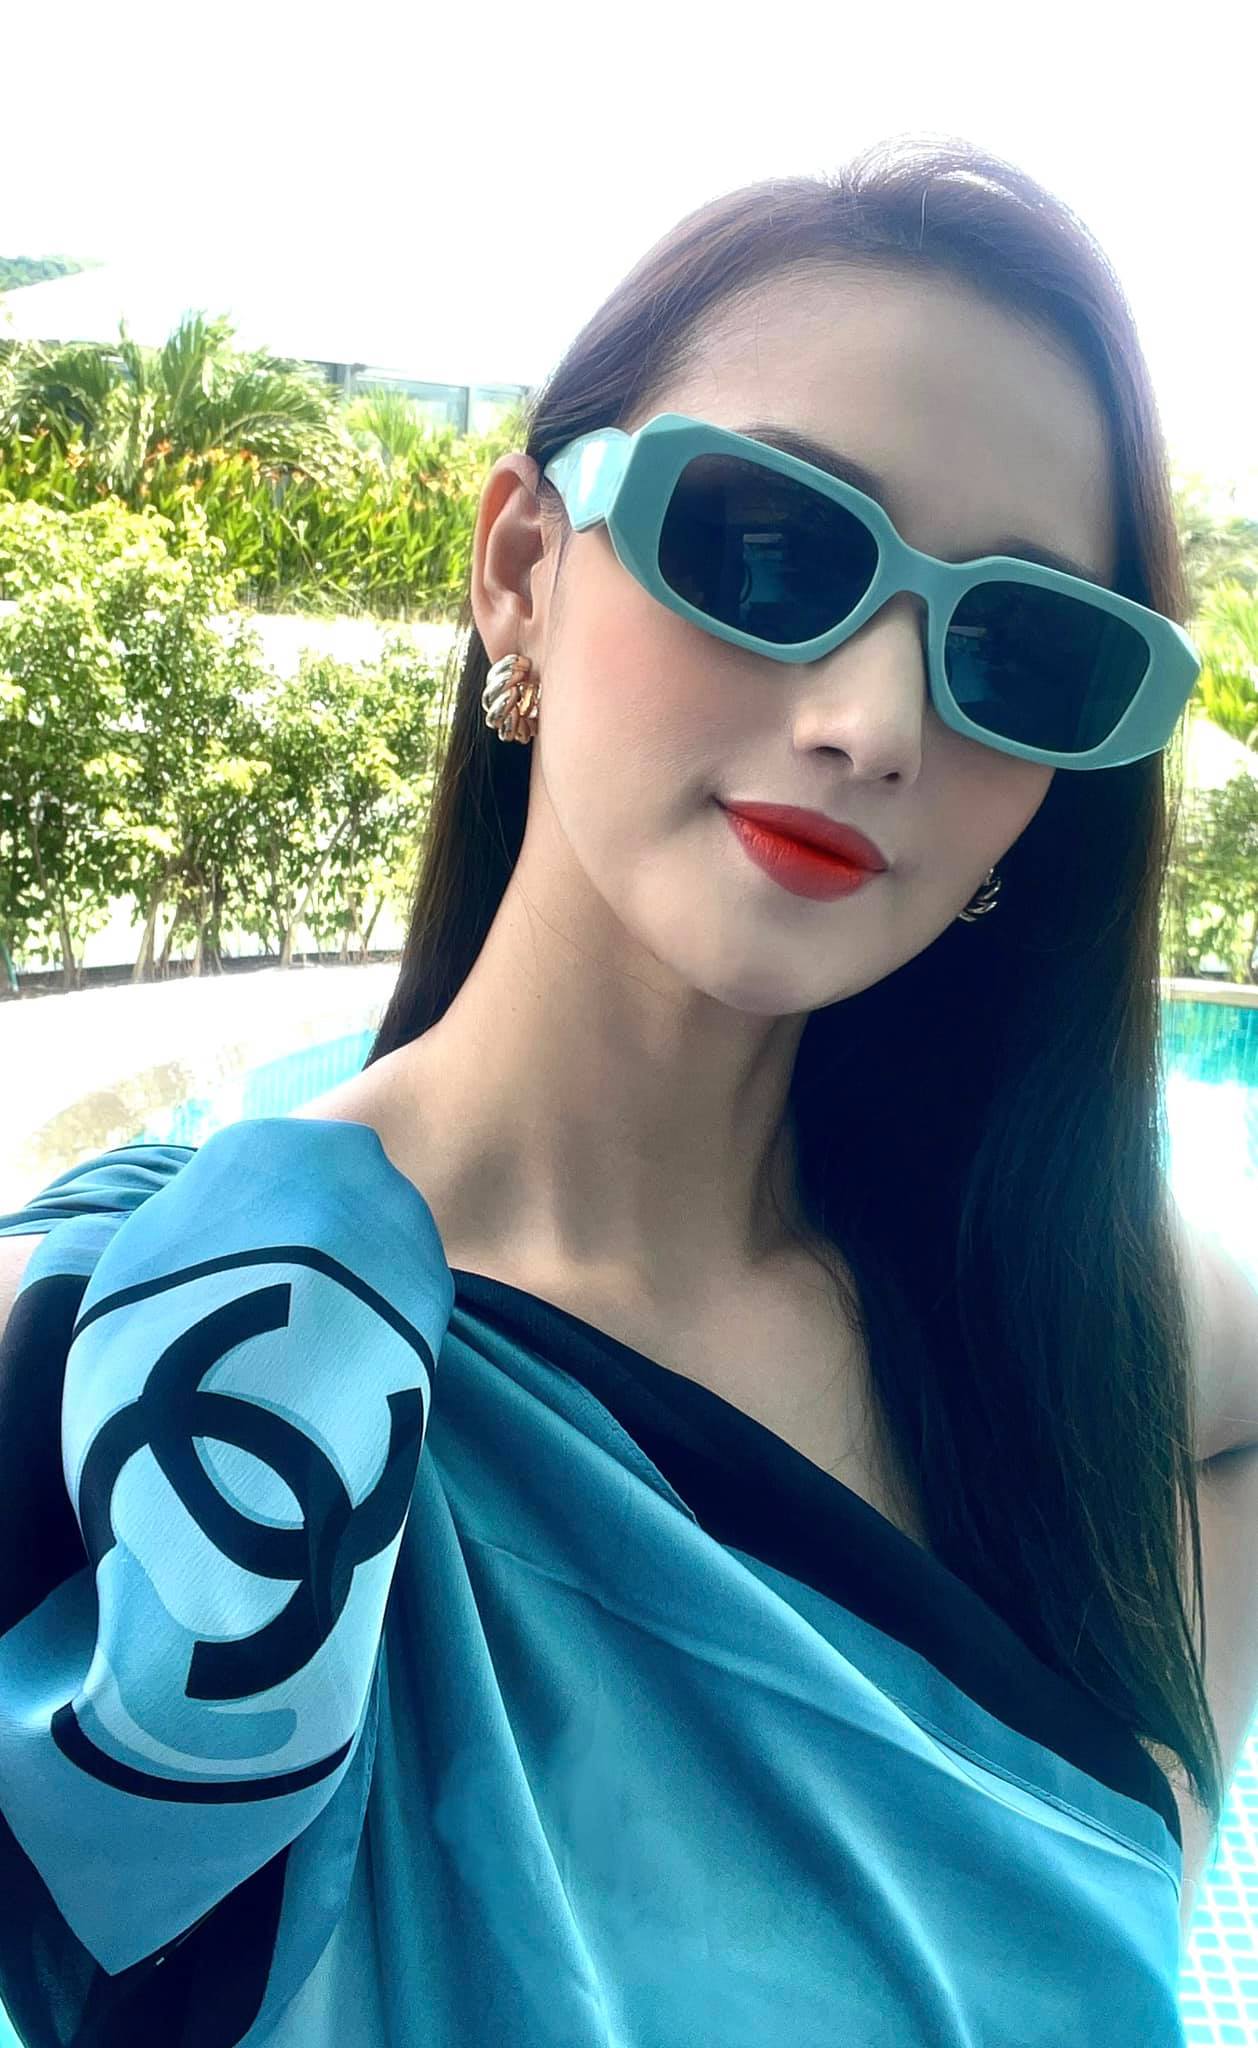 Lã Thanh Huyền đang trong những ngày nghỉ dưỡng ở Phú Quốc. Người đẹp diện cả cây đồ hiệu sắc xanh lạ mắt thưởng trà giữa khung cảnh xanh mát, ngập nắng.